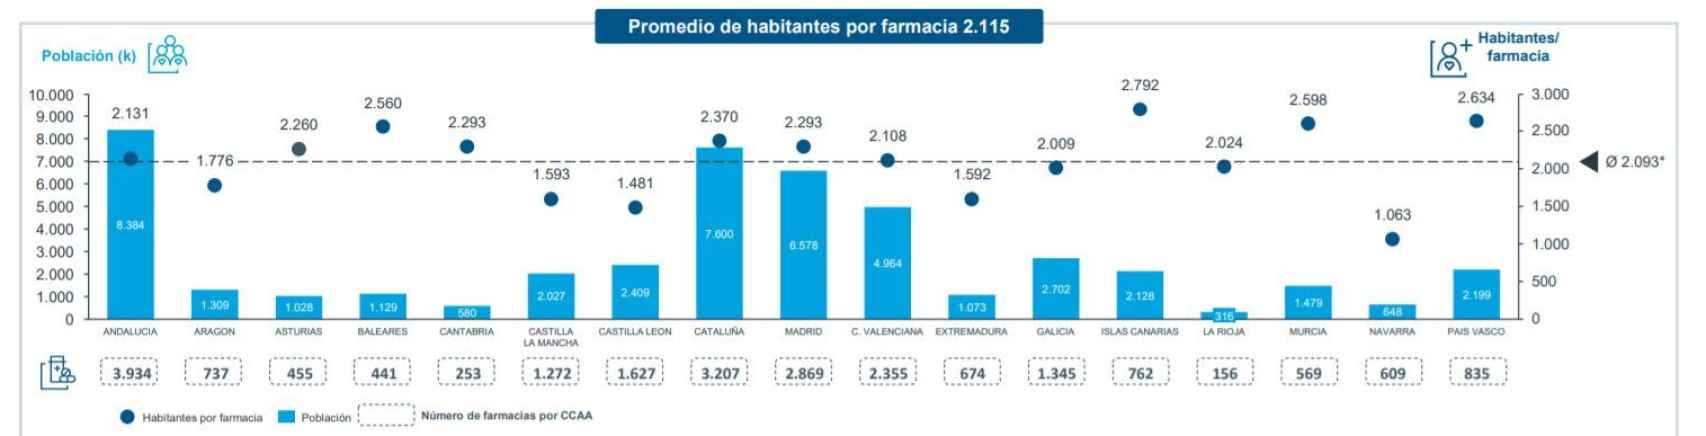 Número de habitantes por farmacia en cada comunidad autónoma.